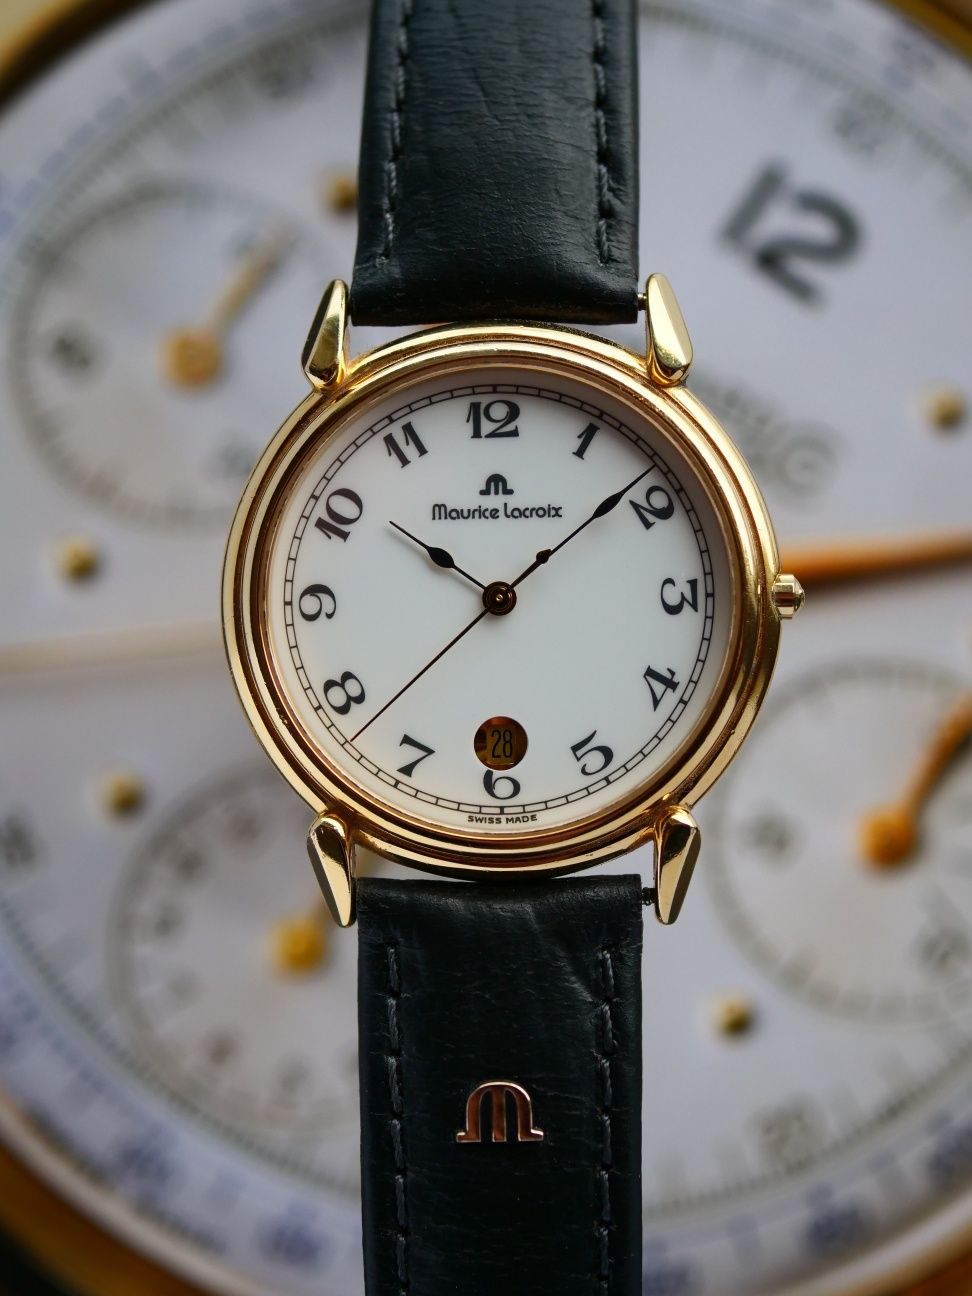 Maurice Lacroix zegarek szwajcarski kwarcowy klasyczny piekny stan